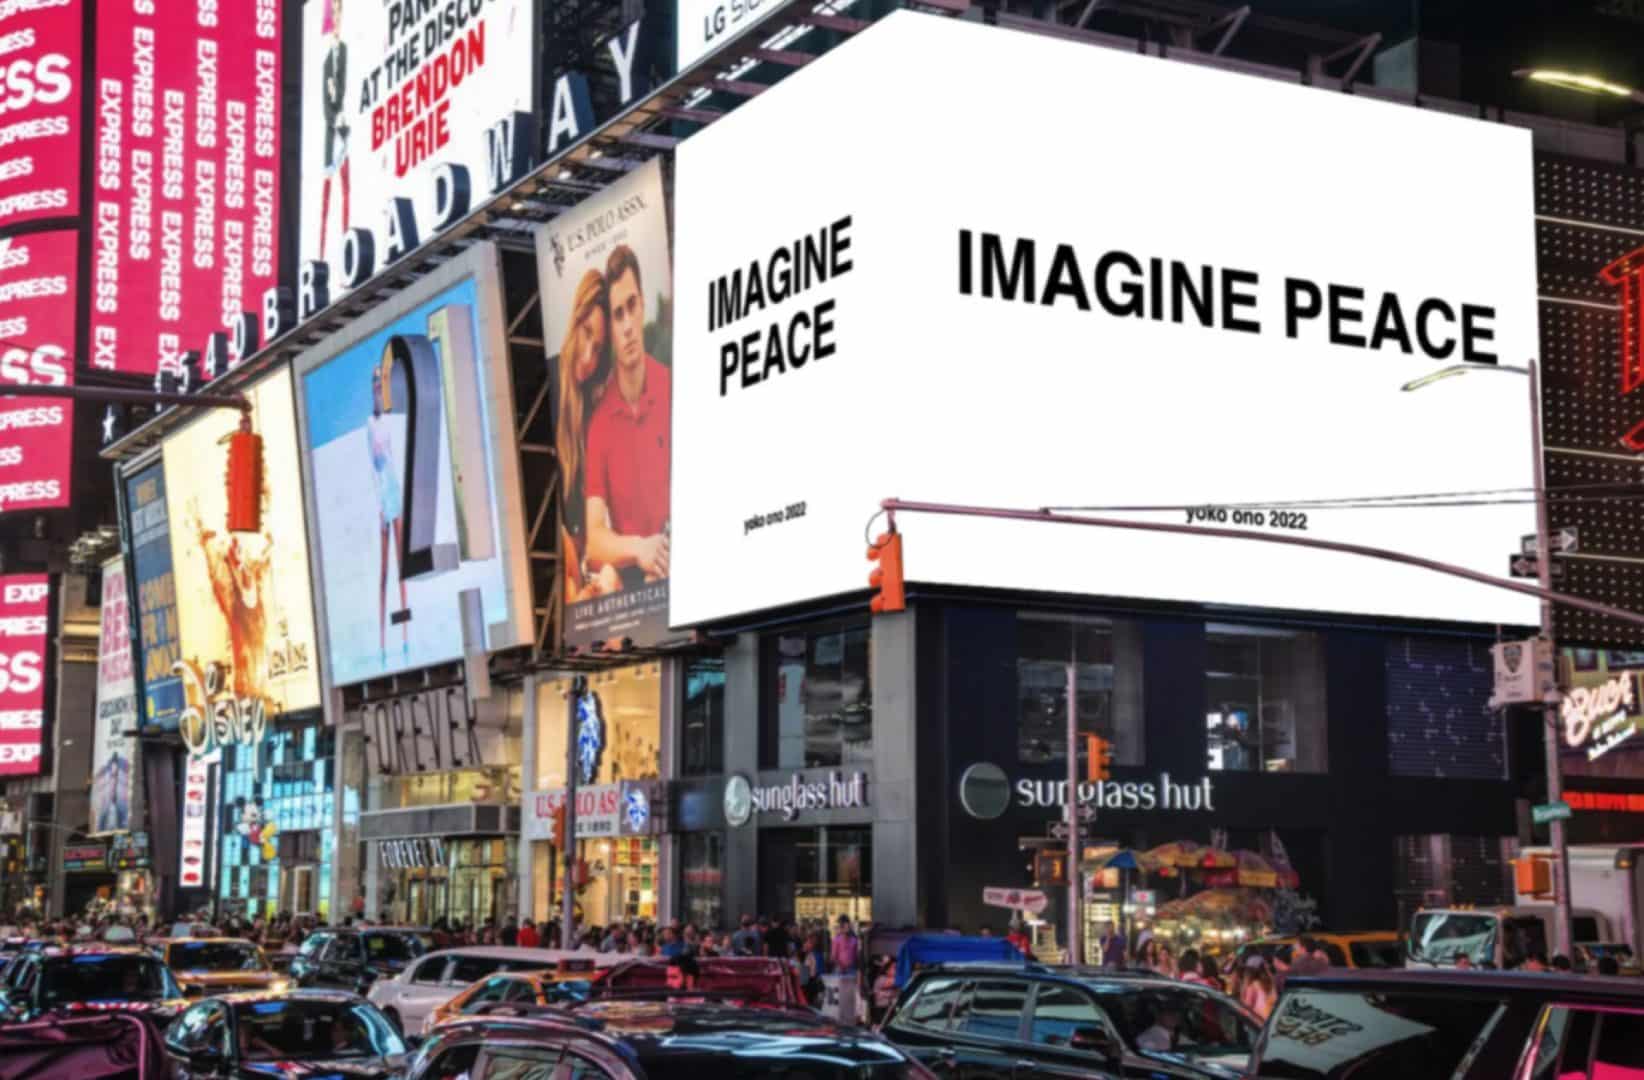 pantalla imagine peace ciudad campaña yoko ono